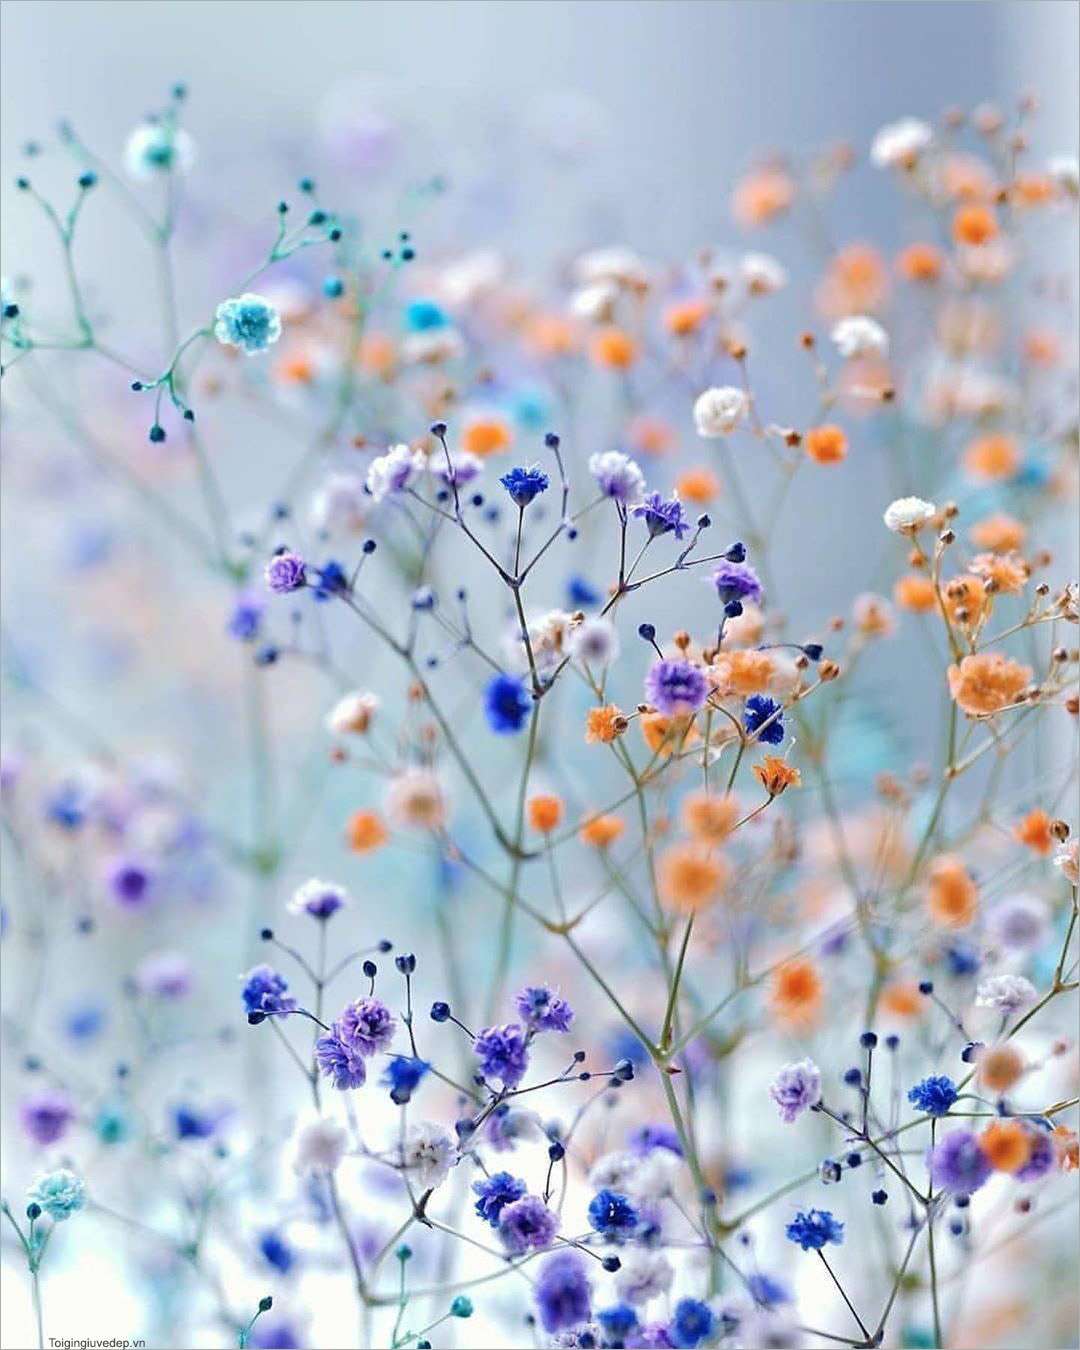 Hình nền hoa đẹp cho bạn thêm yêu đời